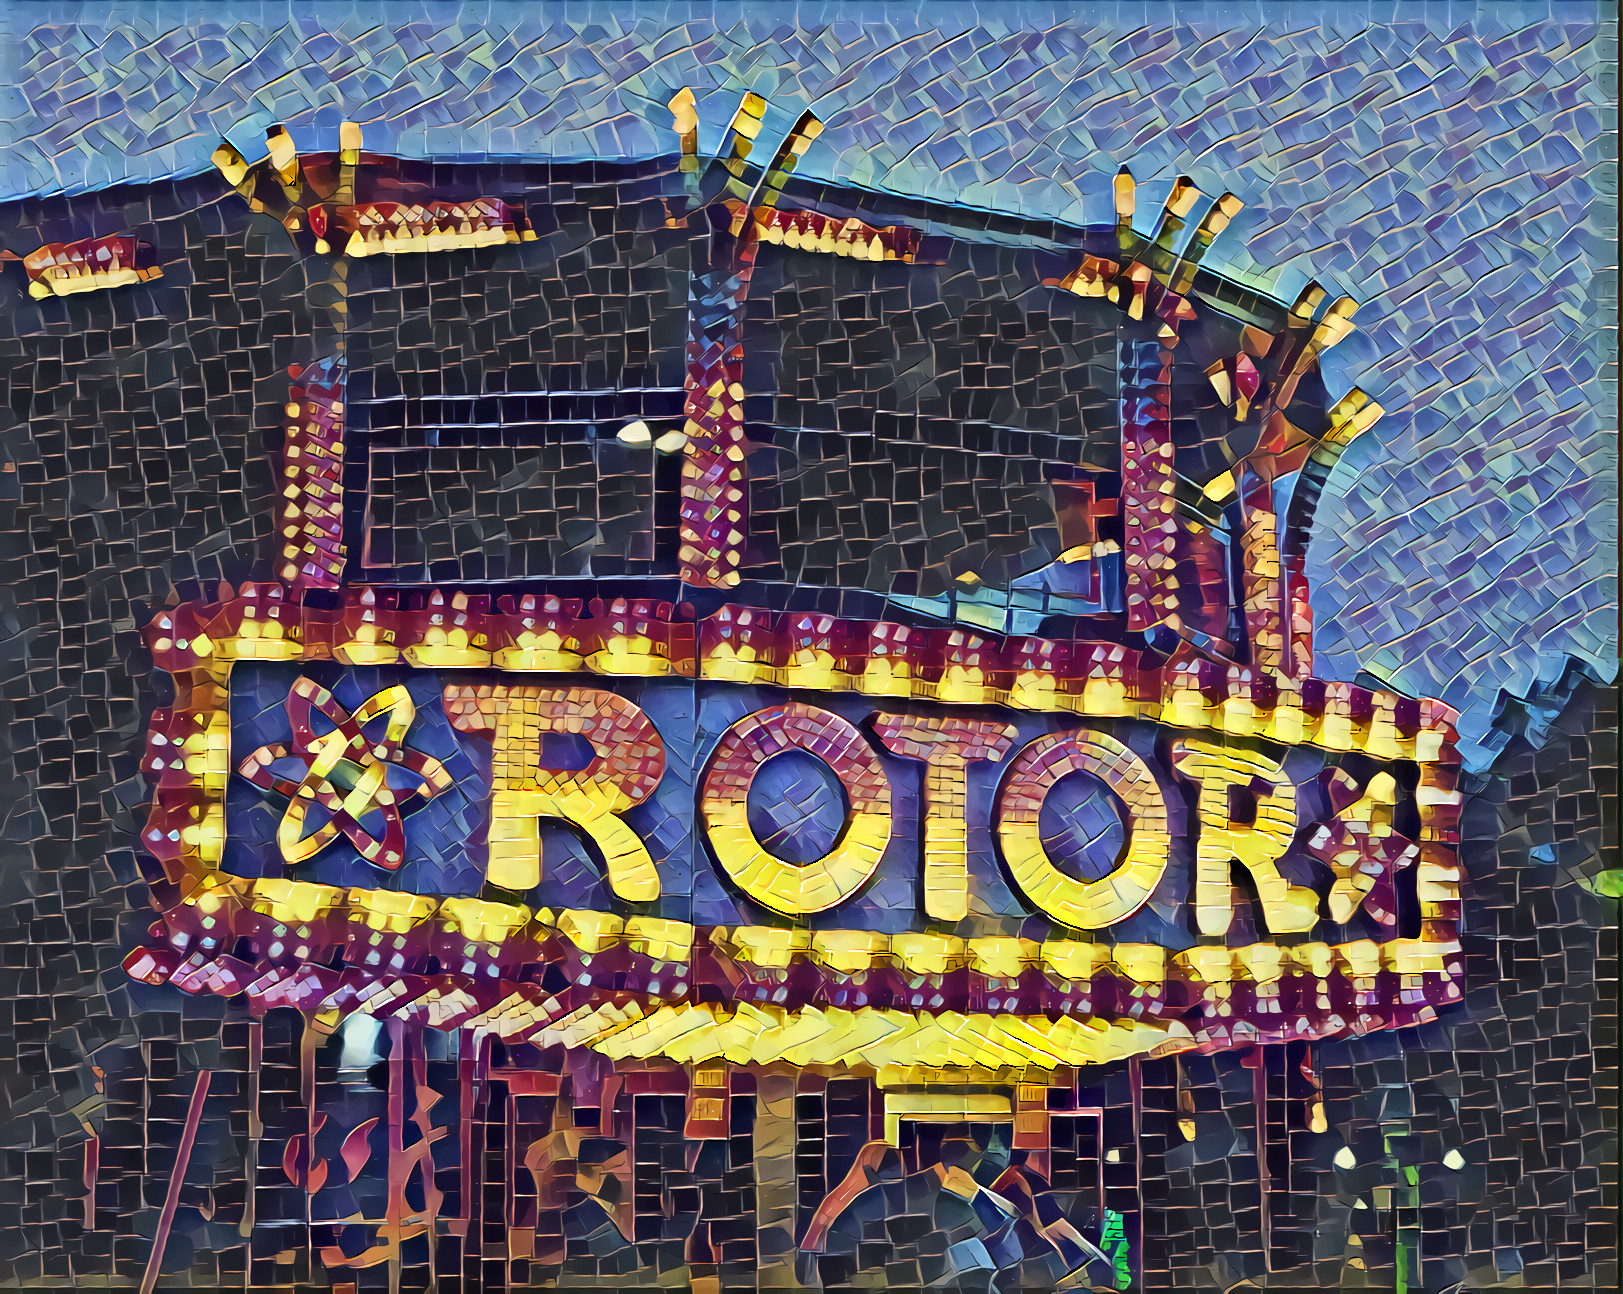 Rotor Disco!